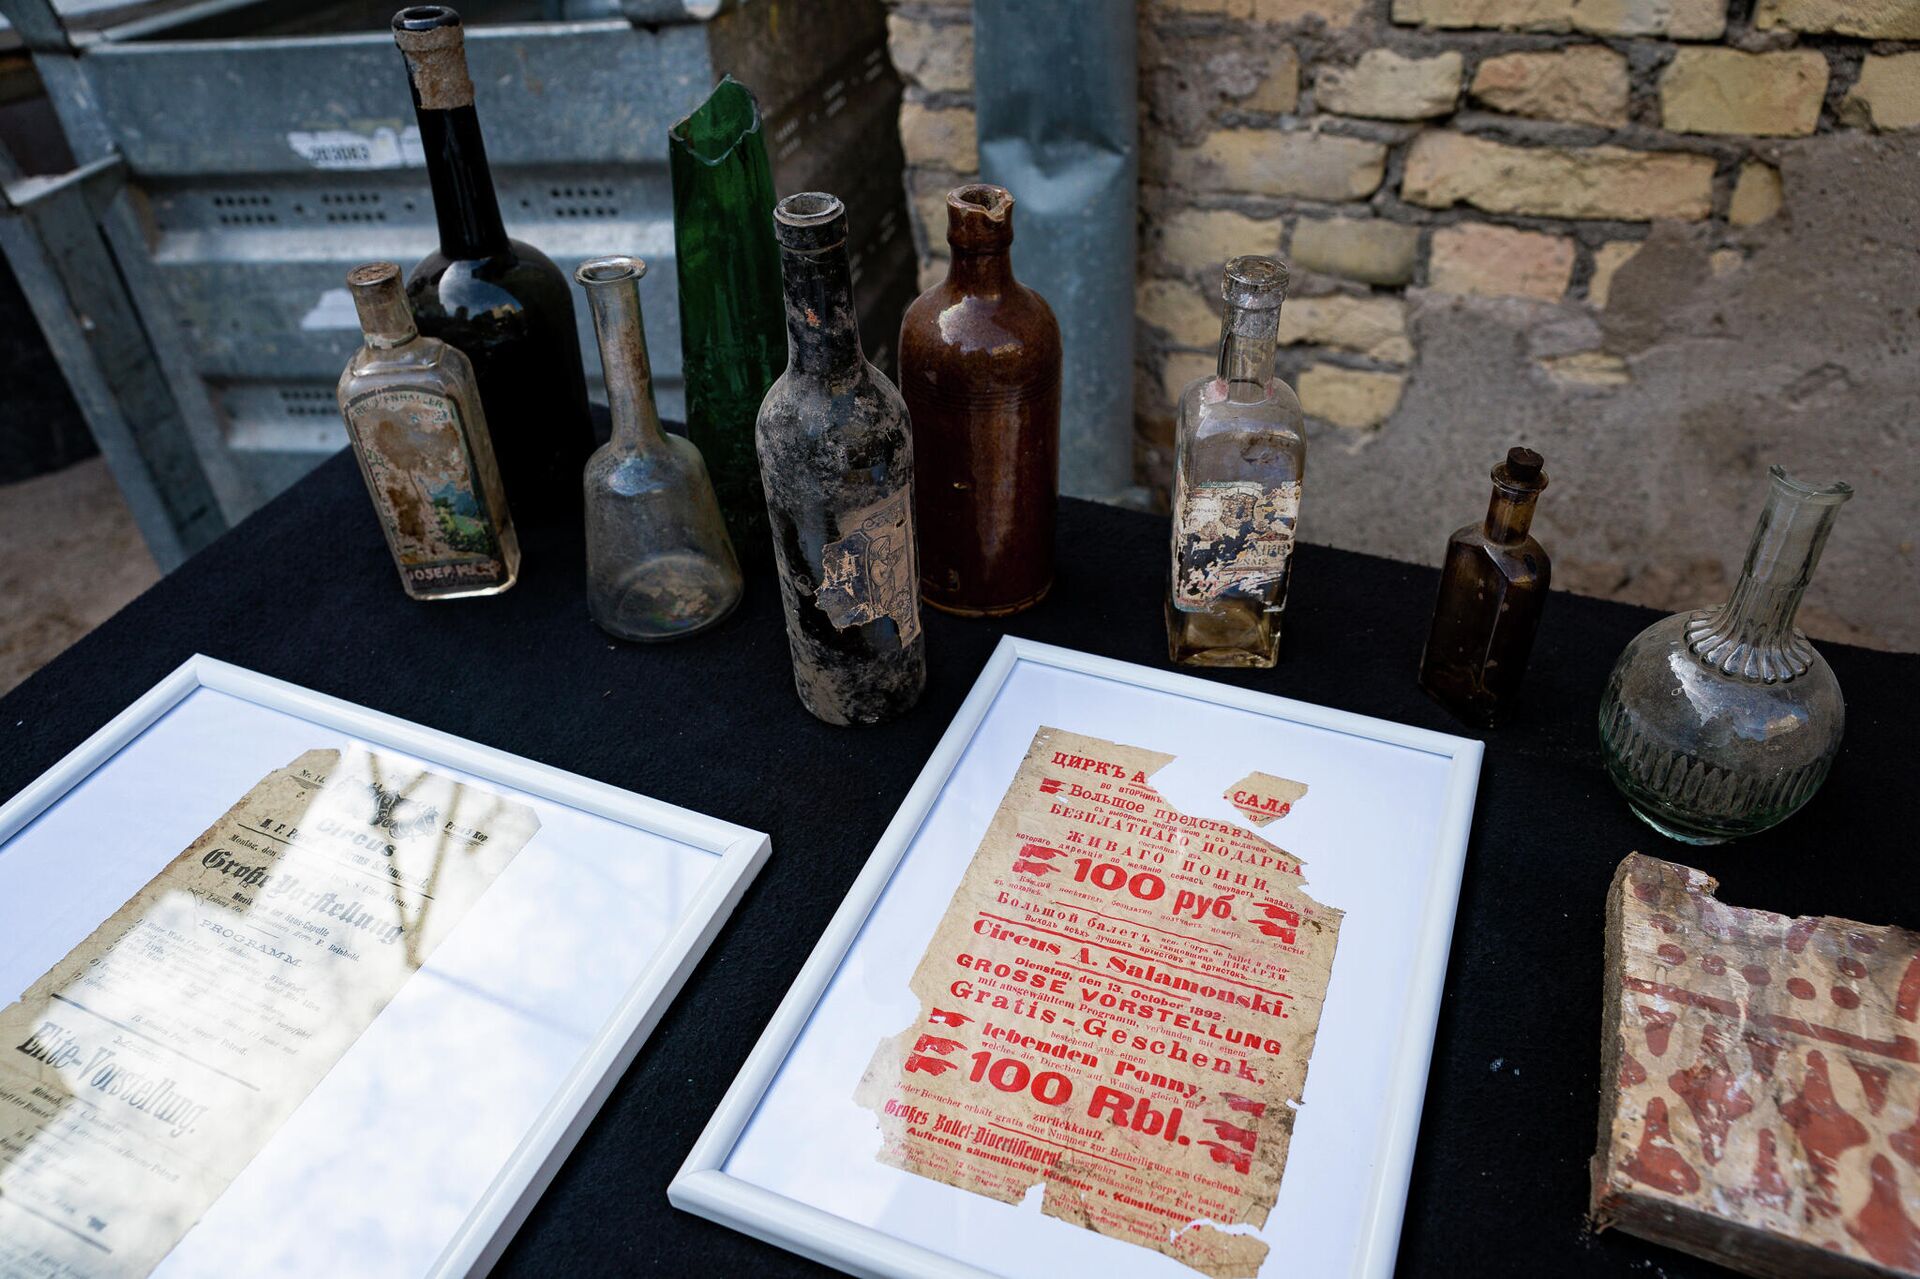 Часть находок на трибунах: старинные афиши, бутылки и даже паспорт 1944 года - Sputnik Латвия, 1920, 28.09.2021